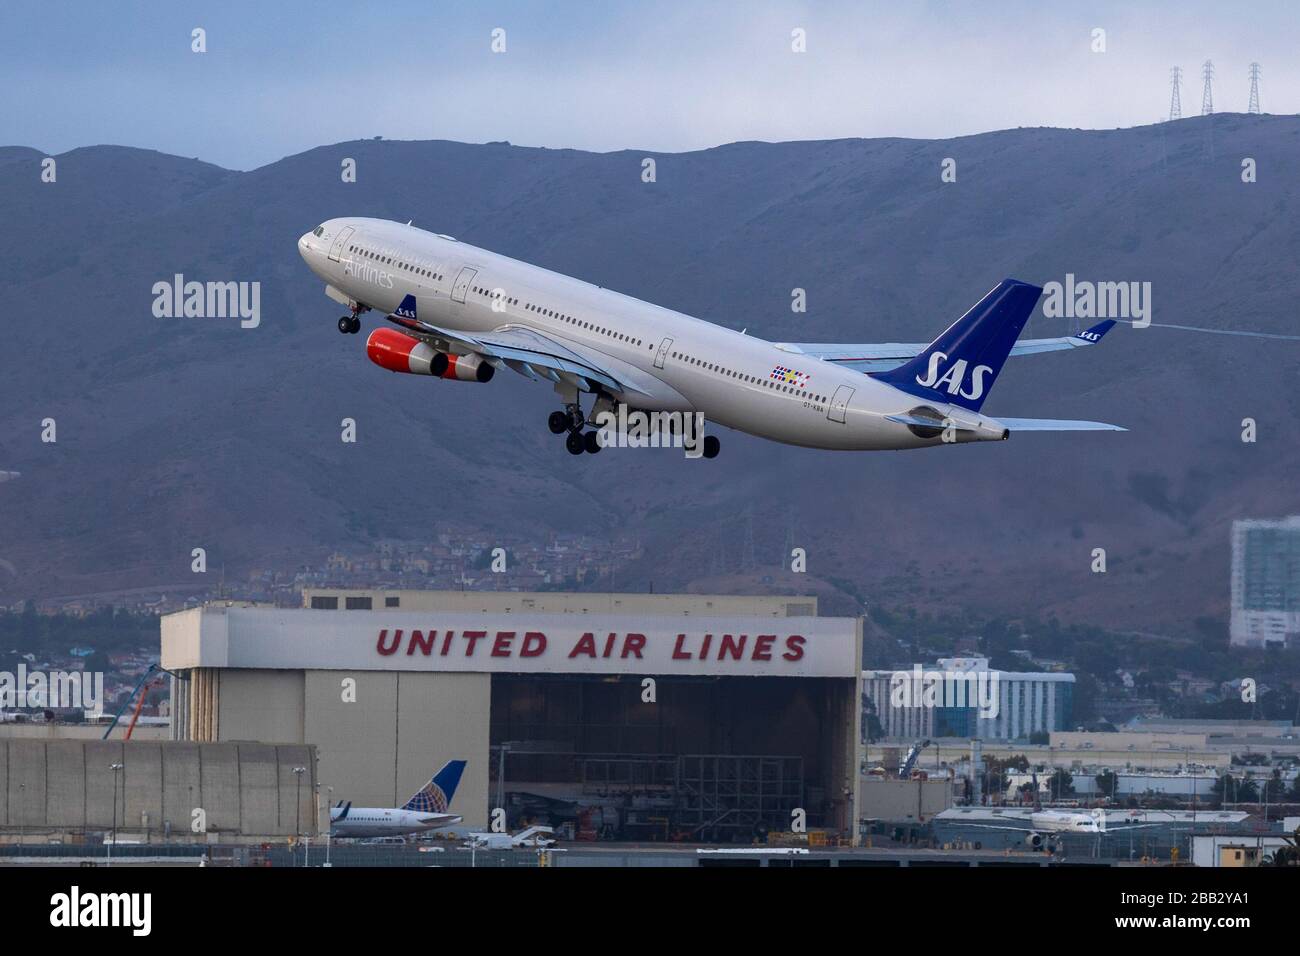 Eine Scandinavier Airlines A340-300 fährt am Freitag, 27. September 2019 in San Francisco, USA vom internationalen Flughafen San Francisco ab. (Foto von IOS/Espa-Images) Stockfoto